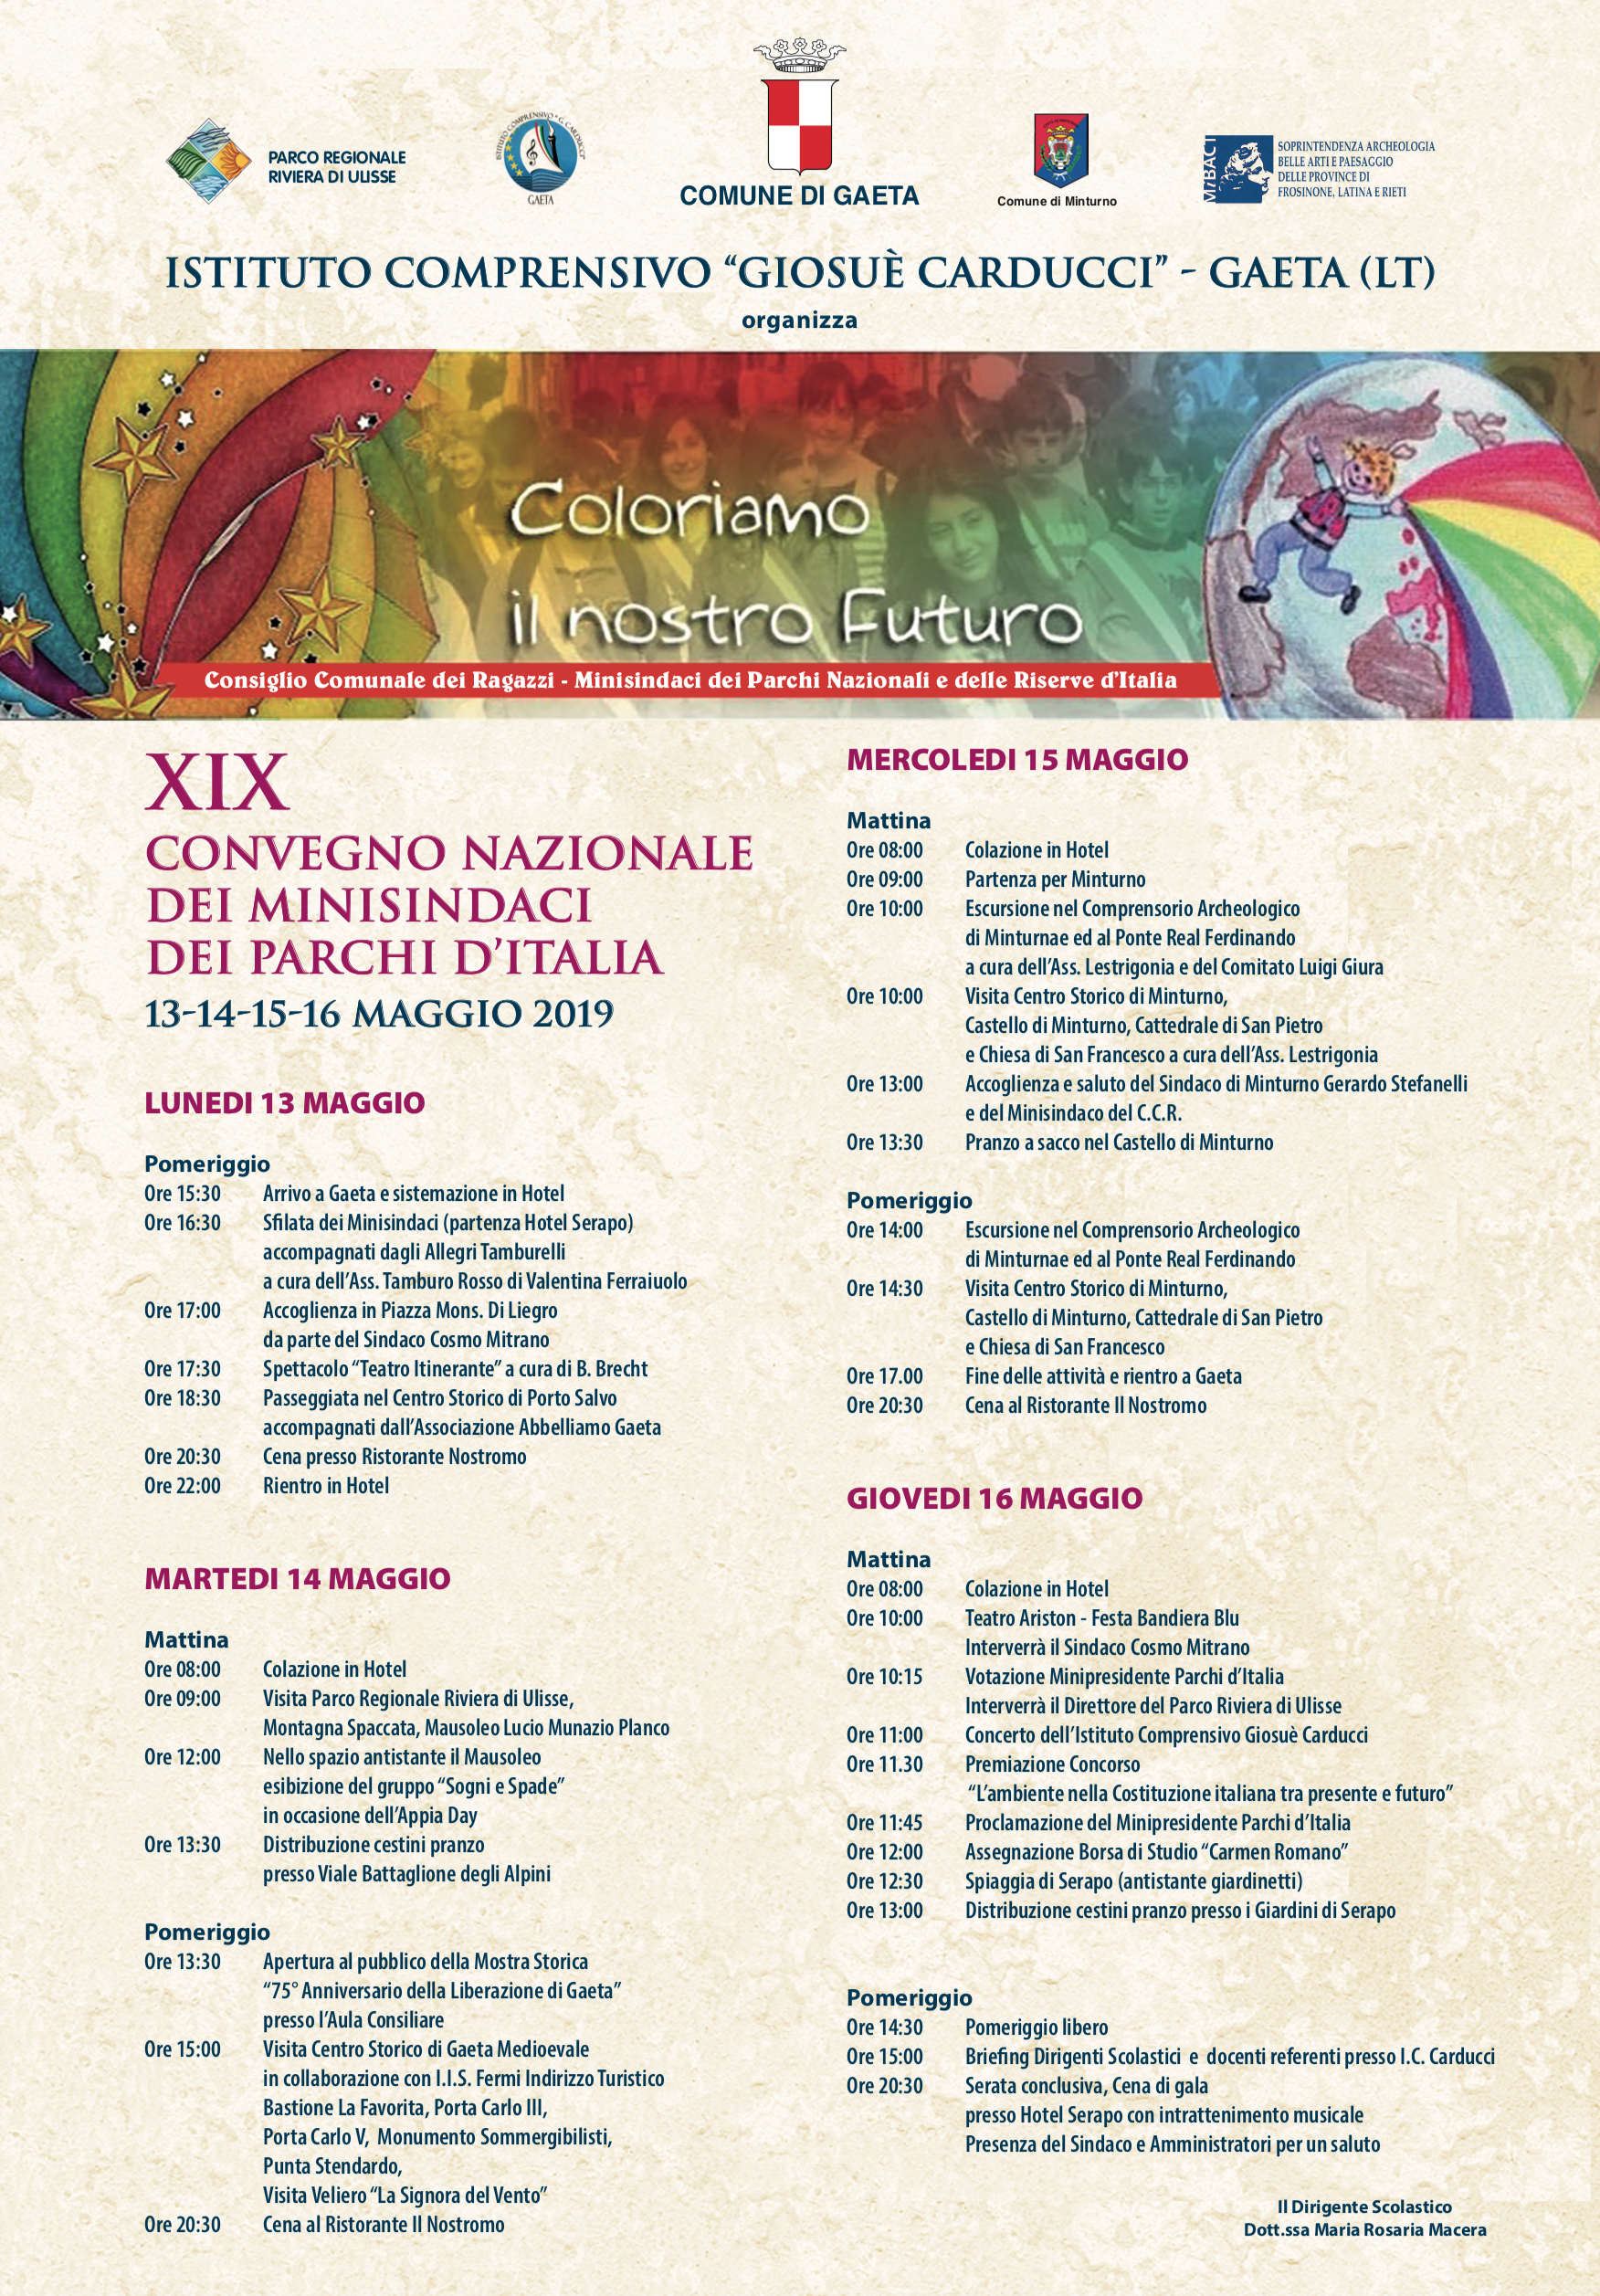 "Coloriamo il nostro futuro" - XIX Convegno nazionale dei Minisindaci dei Parchi d'Italia. 